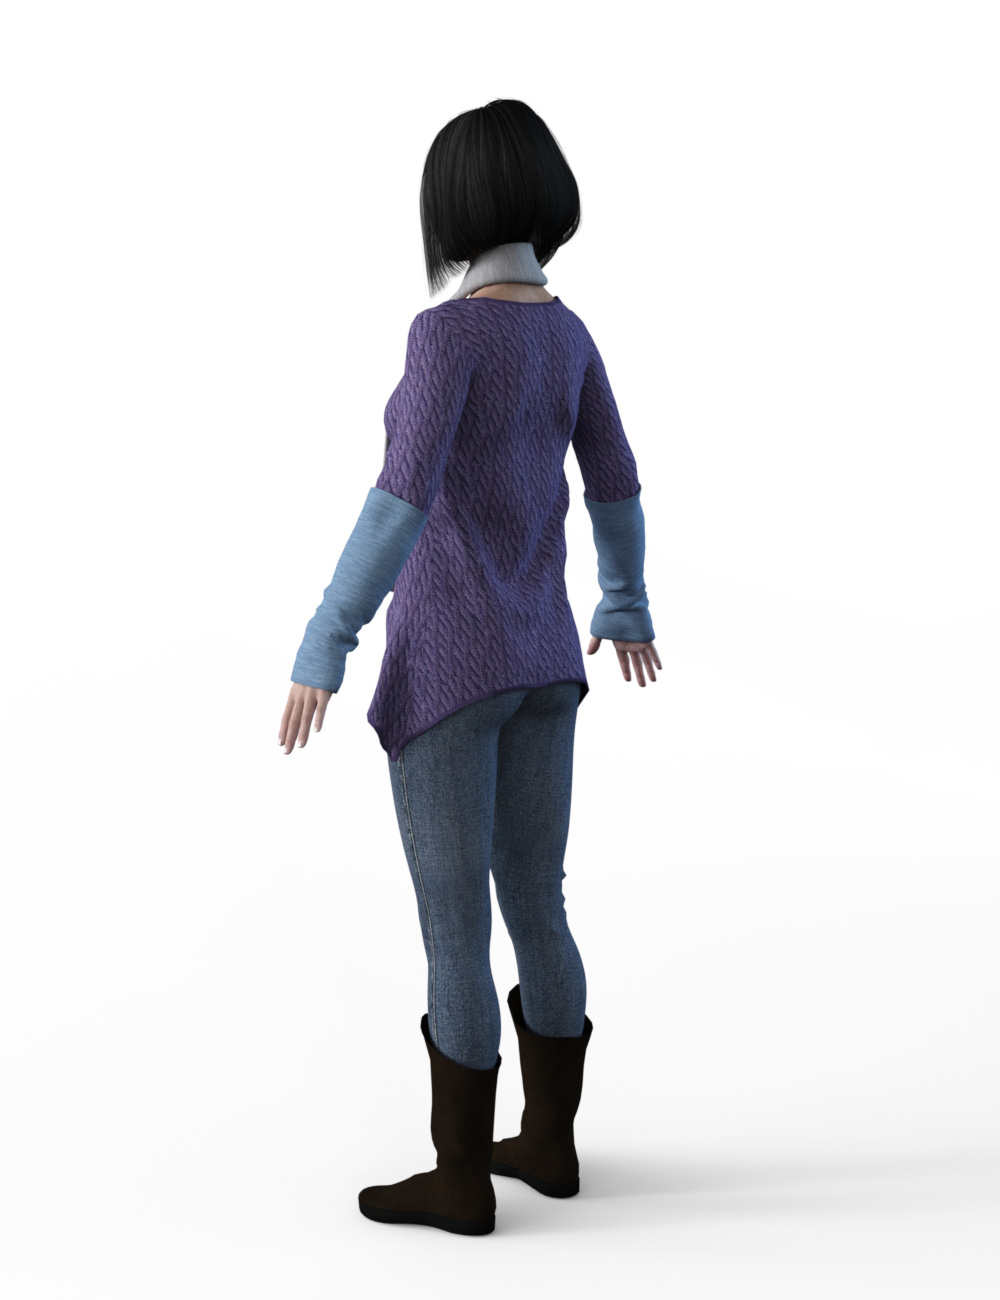 FBX- Mei Lin Frosty Winter Outfit by: Paleo, 3D Models by Daz 3D